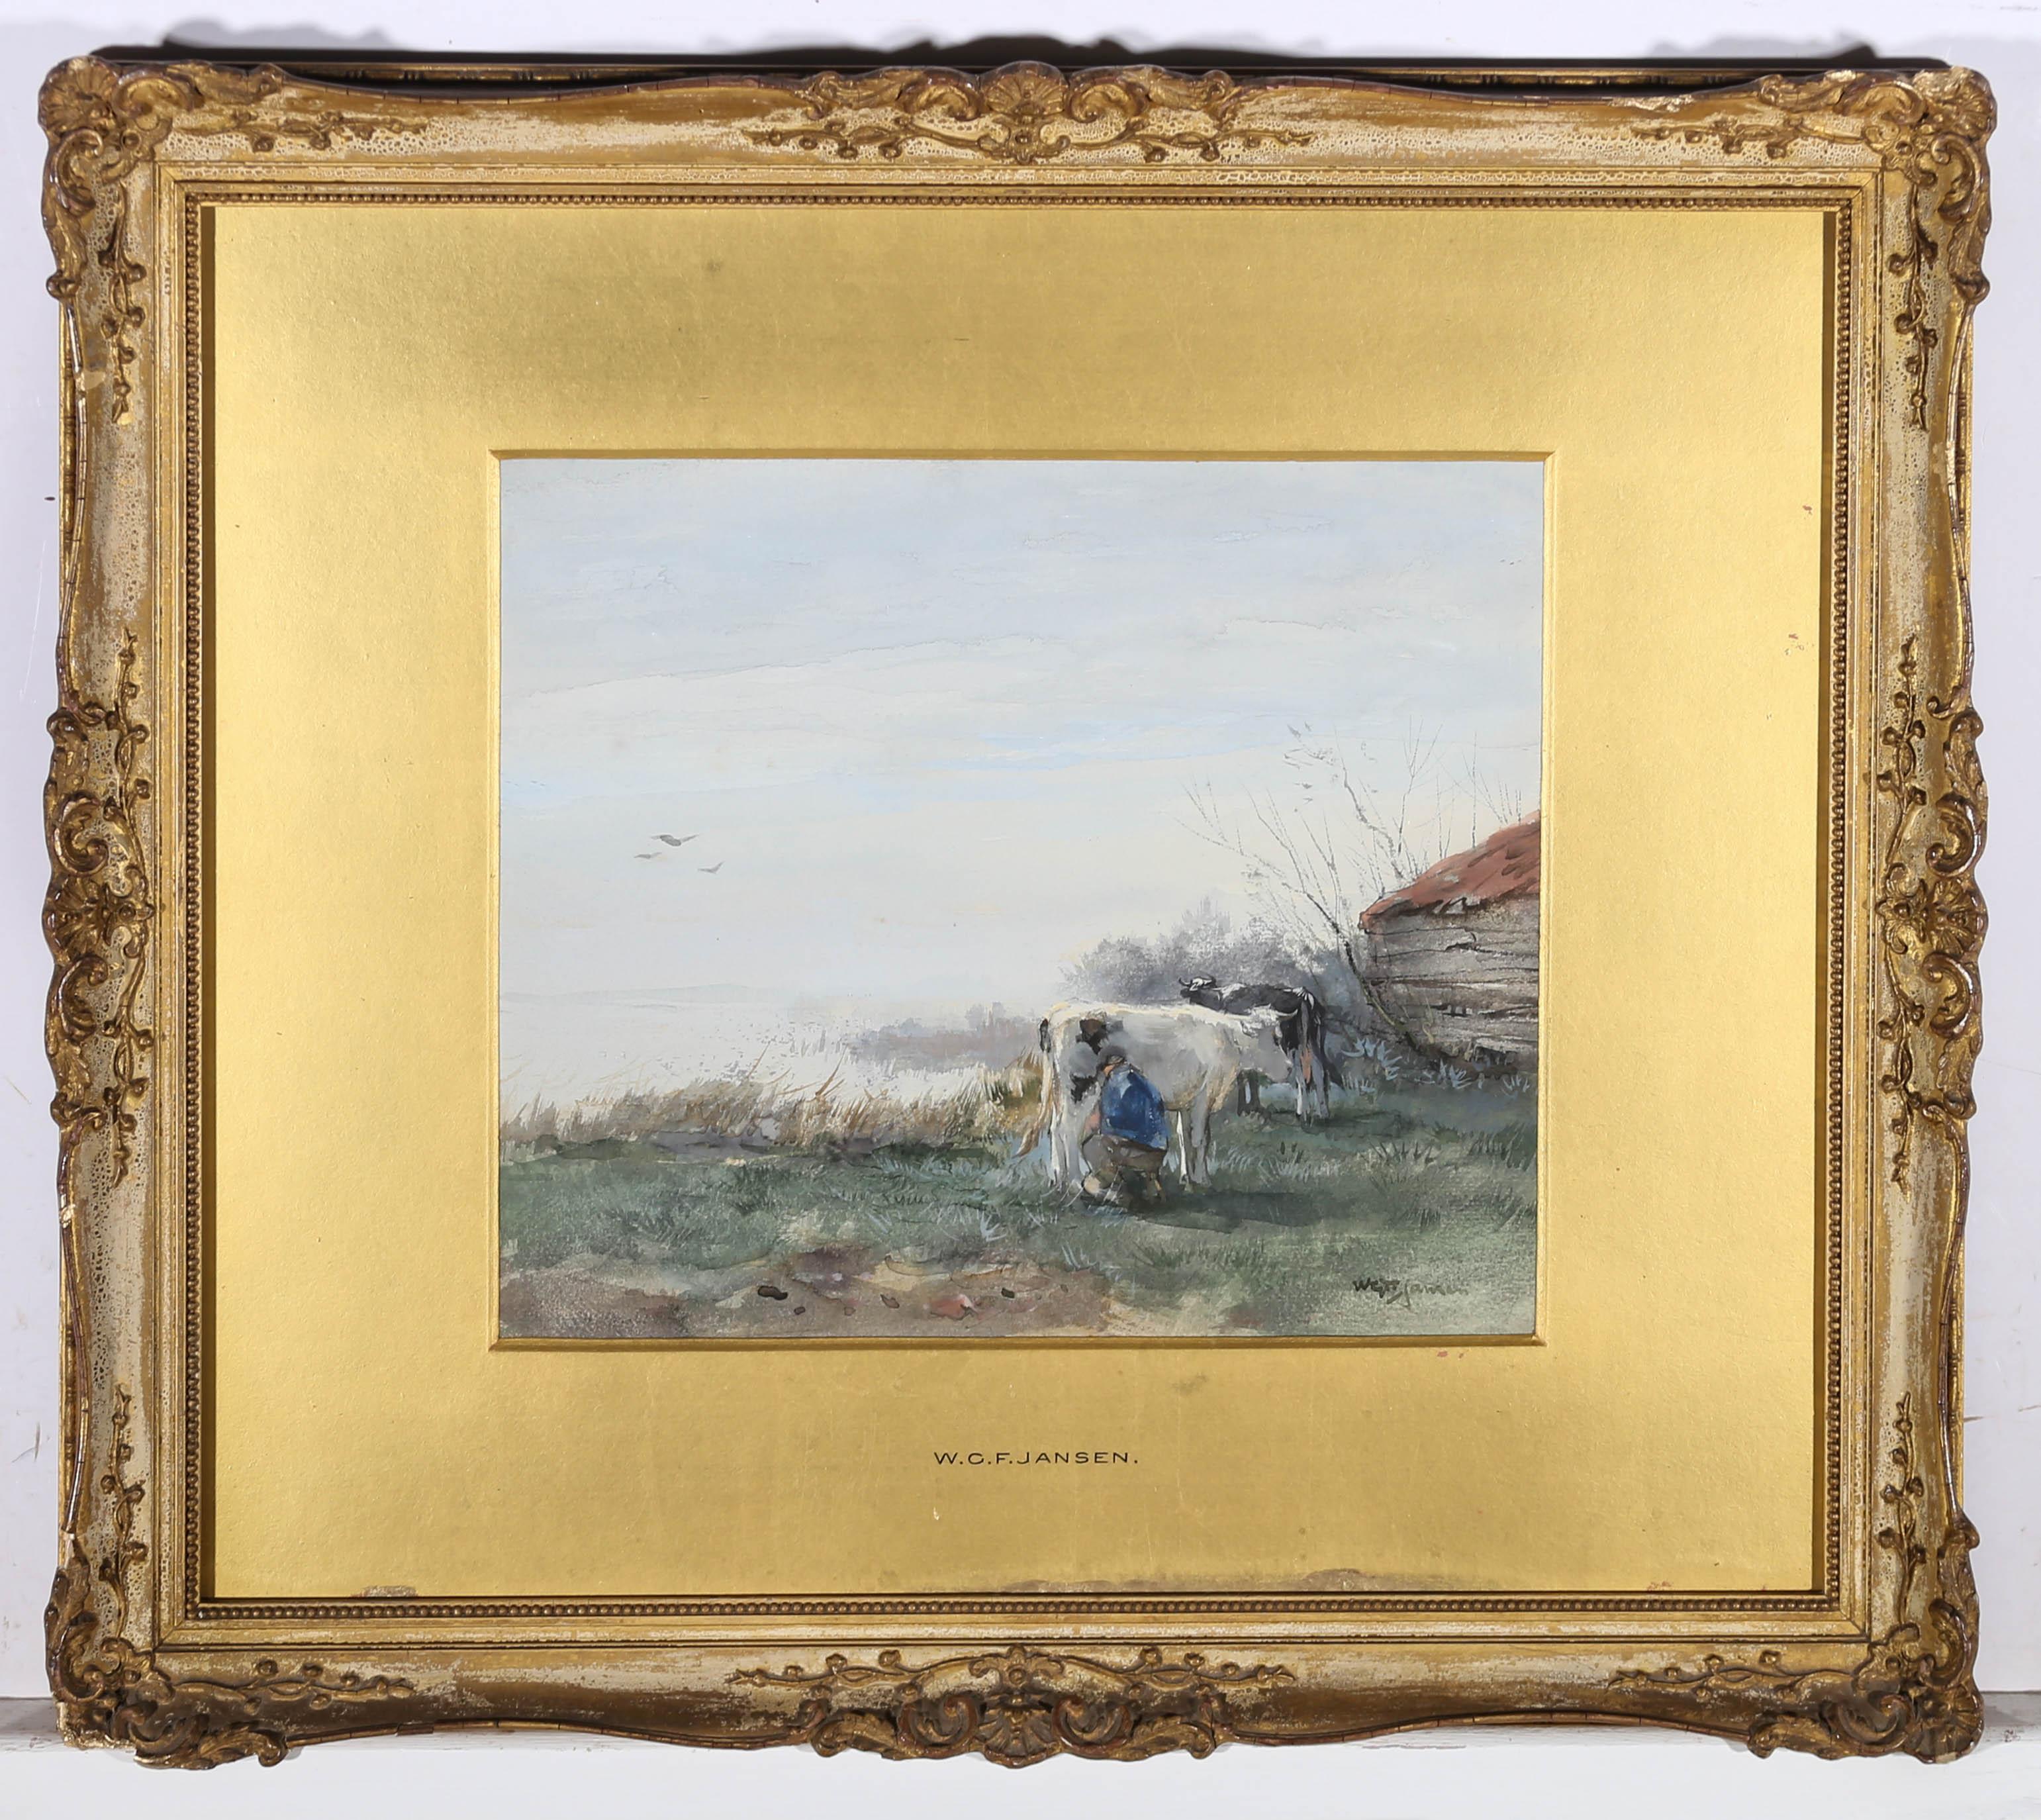 William George Frederick Jansen Landscape Art - William G. Frederick Jansen (1871-1949) - Early 20thC Watercolour, Milking Time